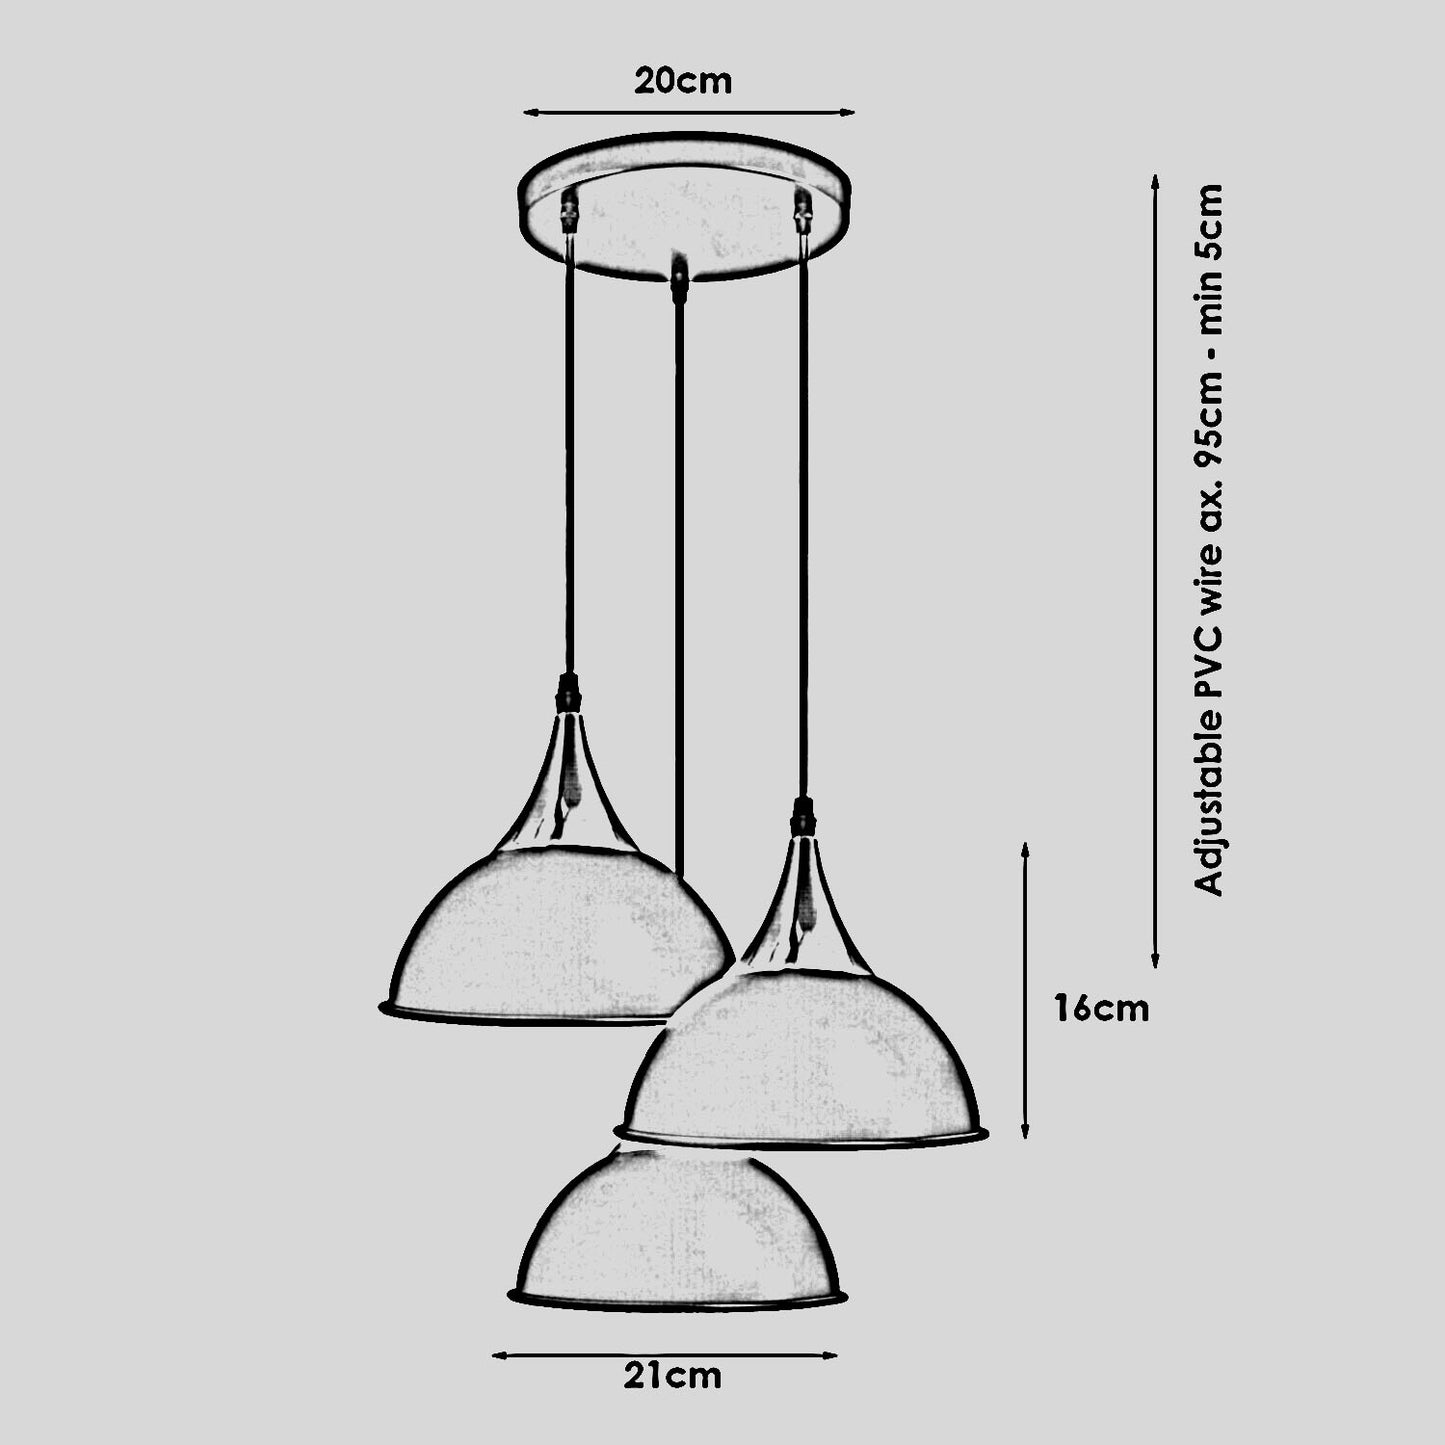 3-Wege-Vintage-Lampenschirm aus industriellem Metall, moderne hängende Retro-Deckenpendelleuchten, weiß